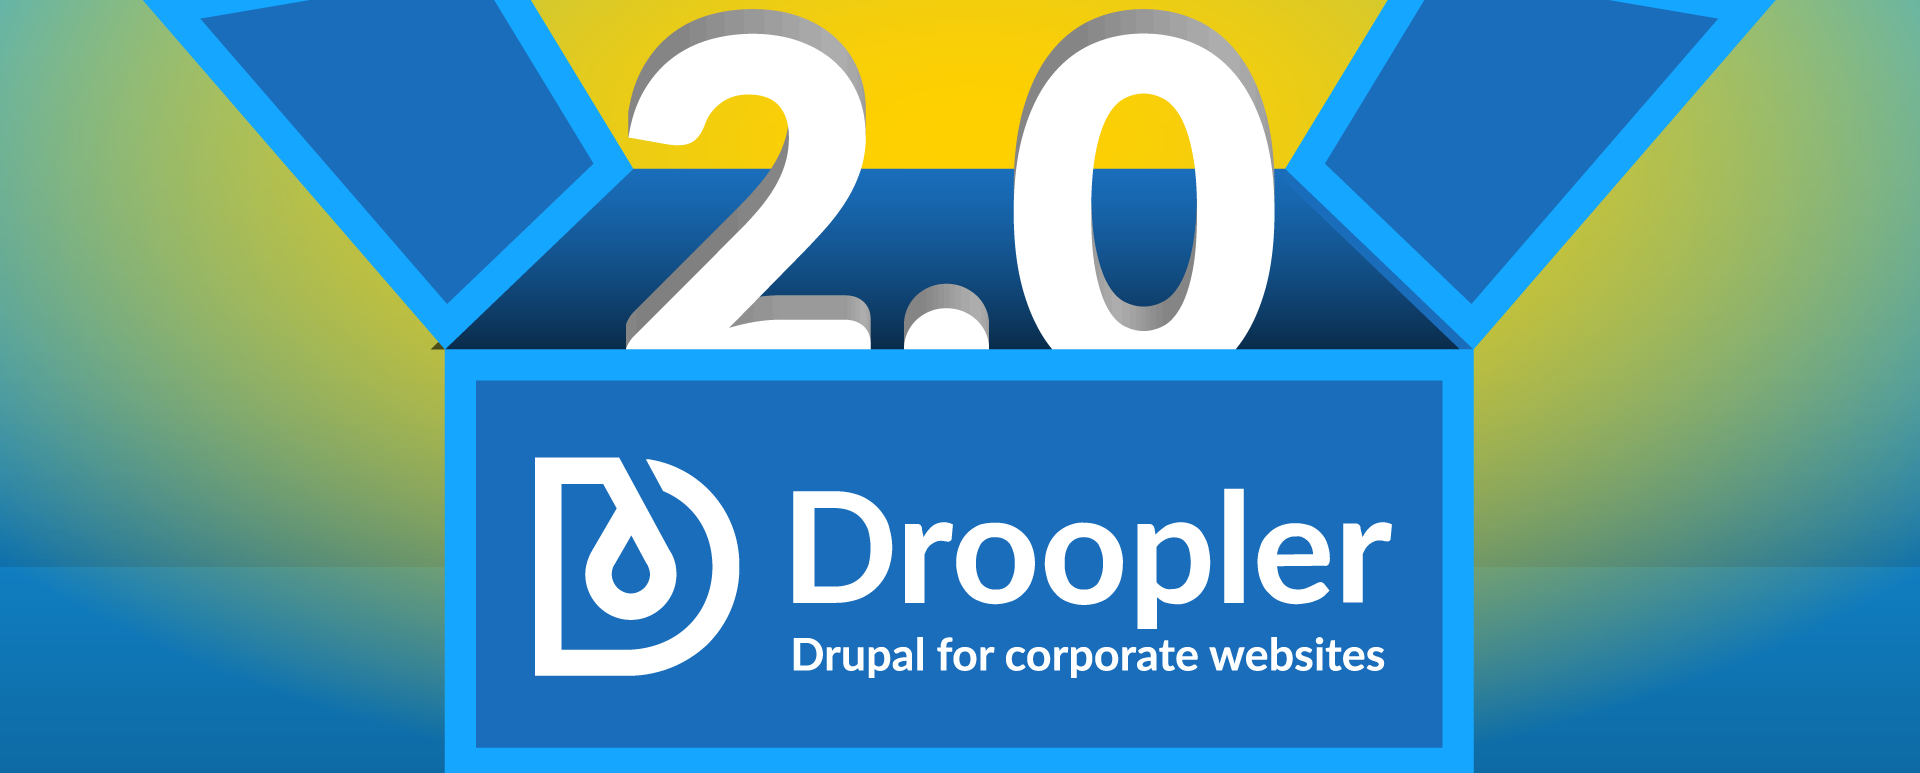 Droopler 2